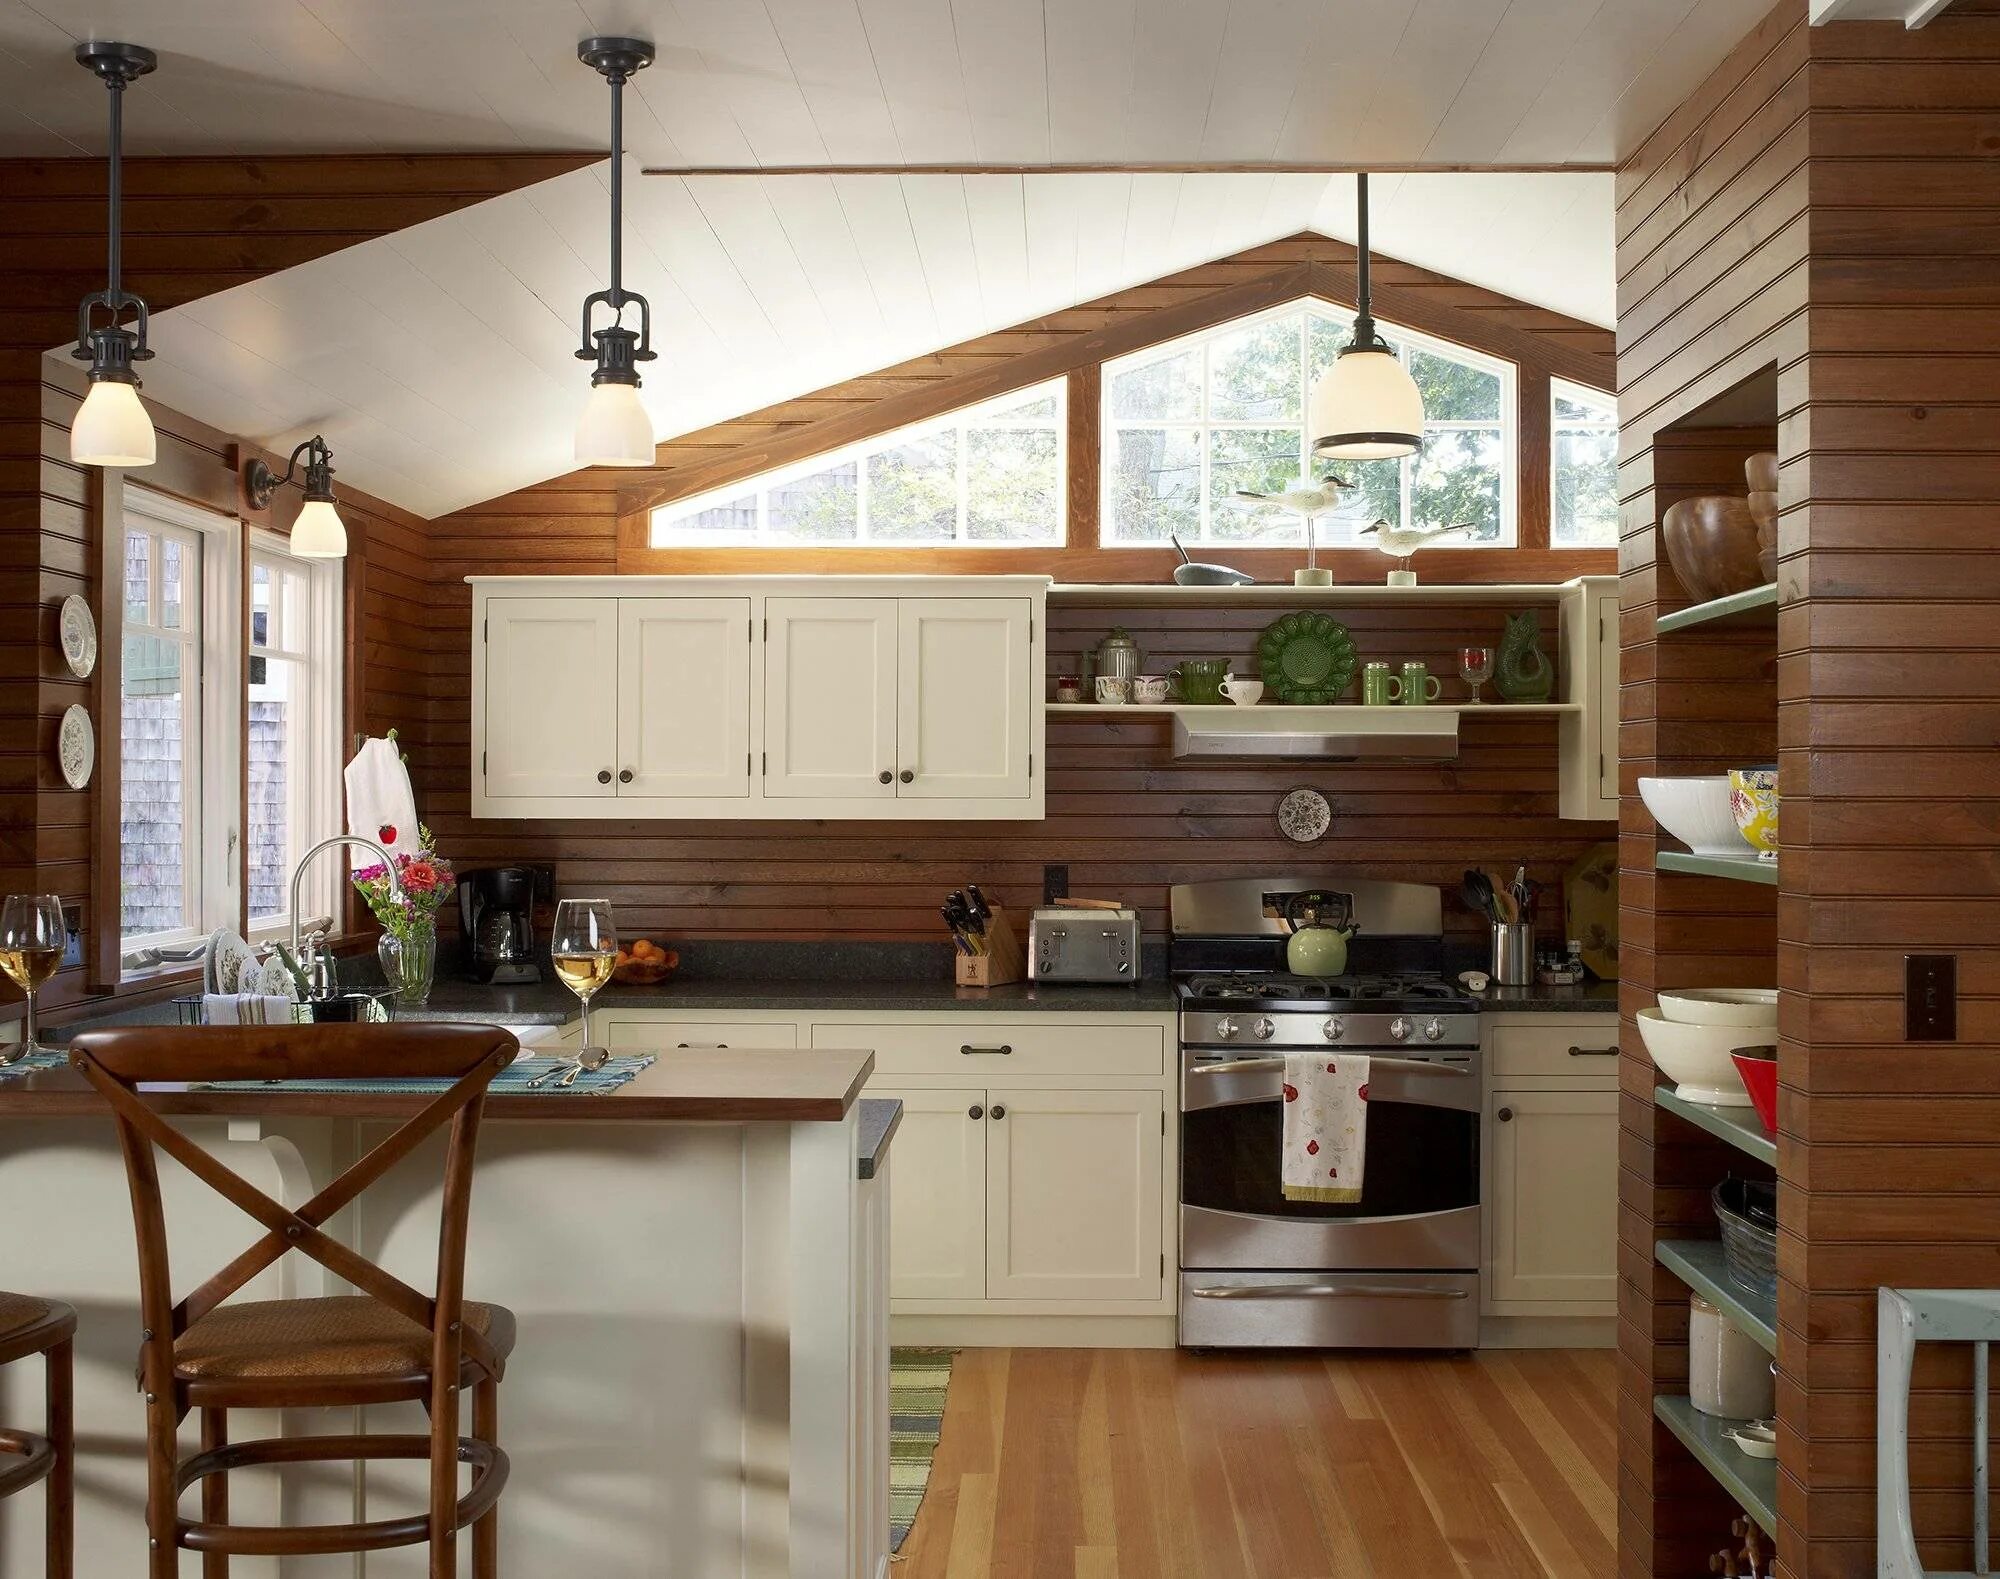 Кухни хорошие деревянные. Кухни на дачу. Кухня в деревянном доме. Деревянная кухня в интерьере. Маленькая кухня в деревянном доме.